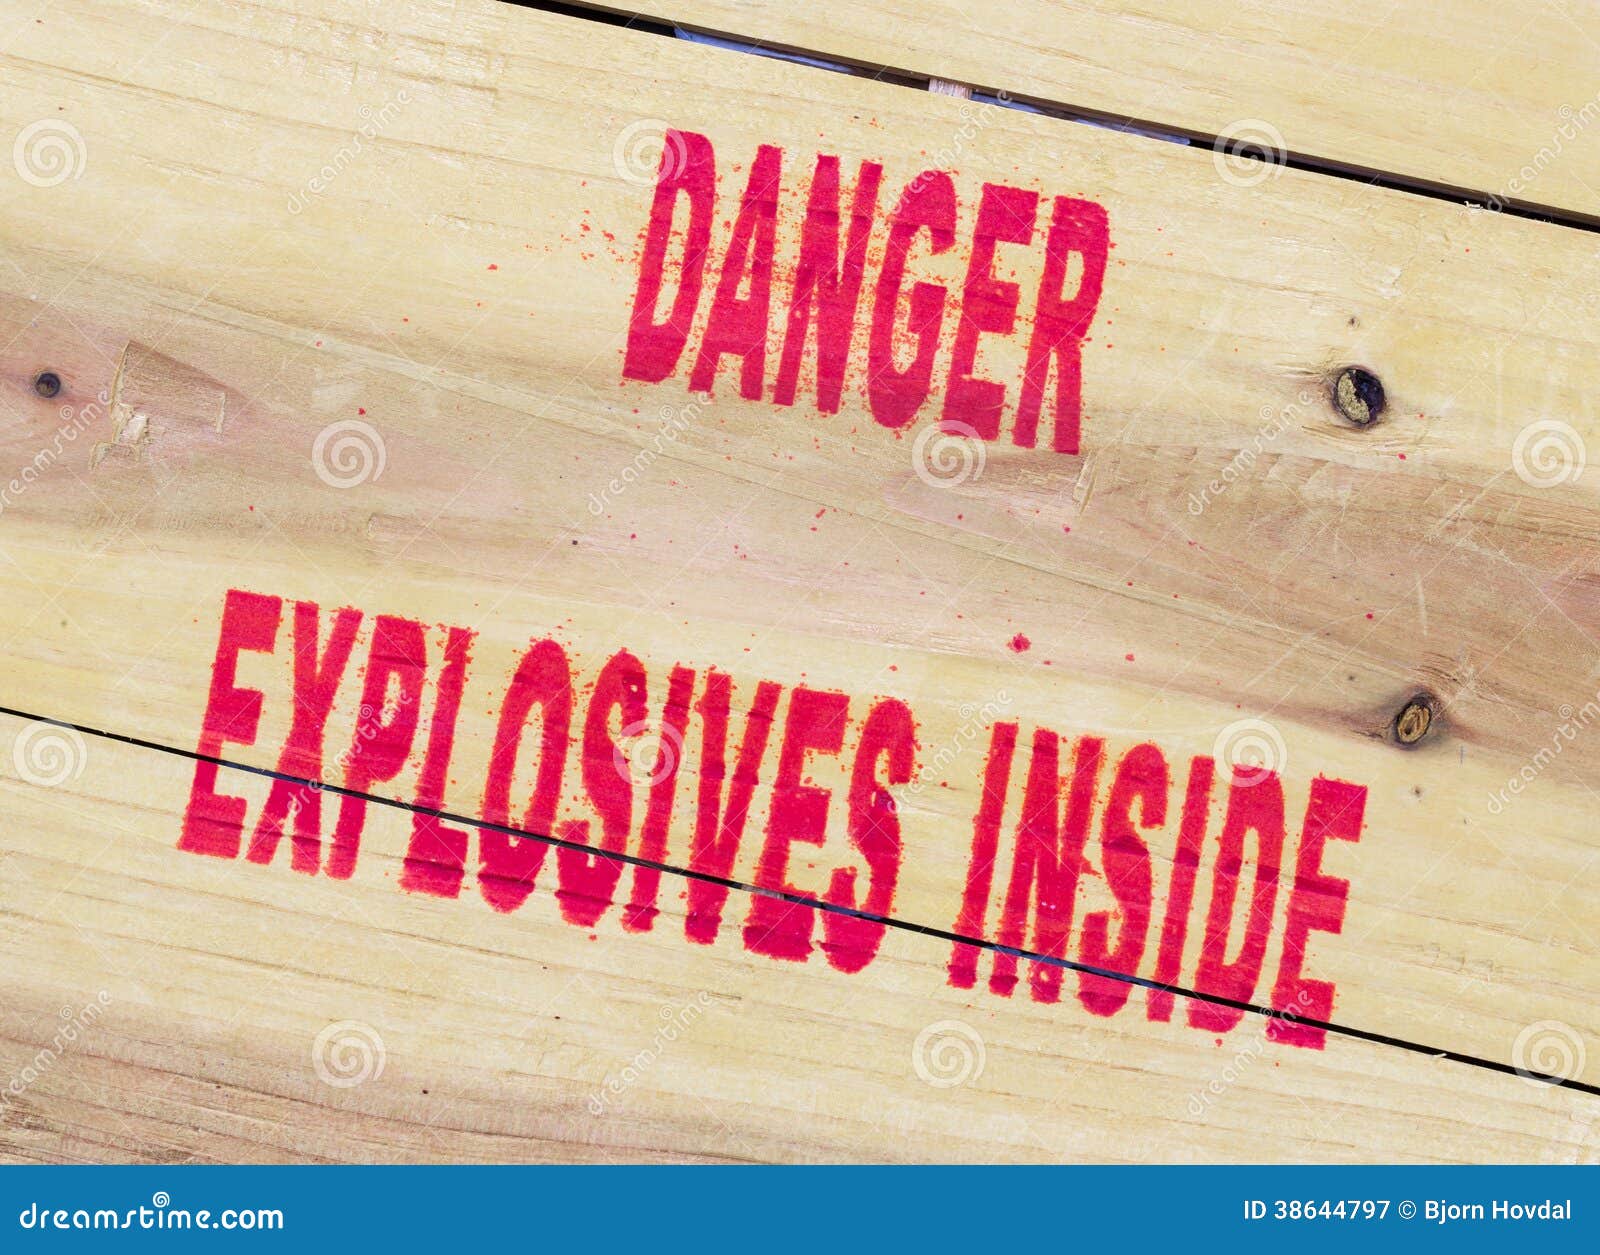 danger explosives